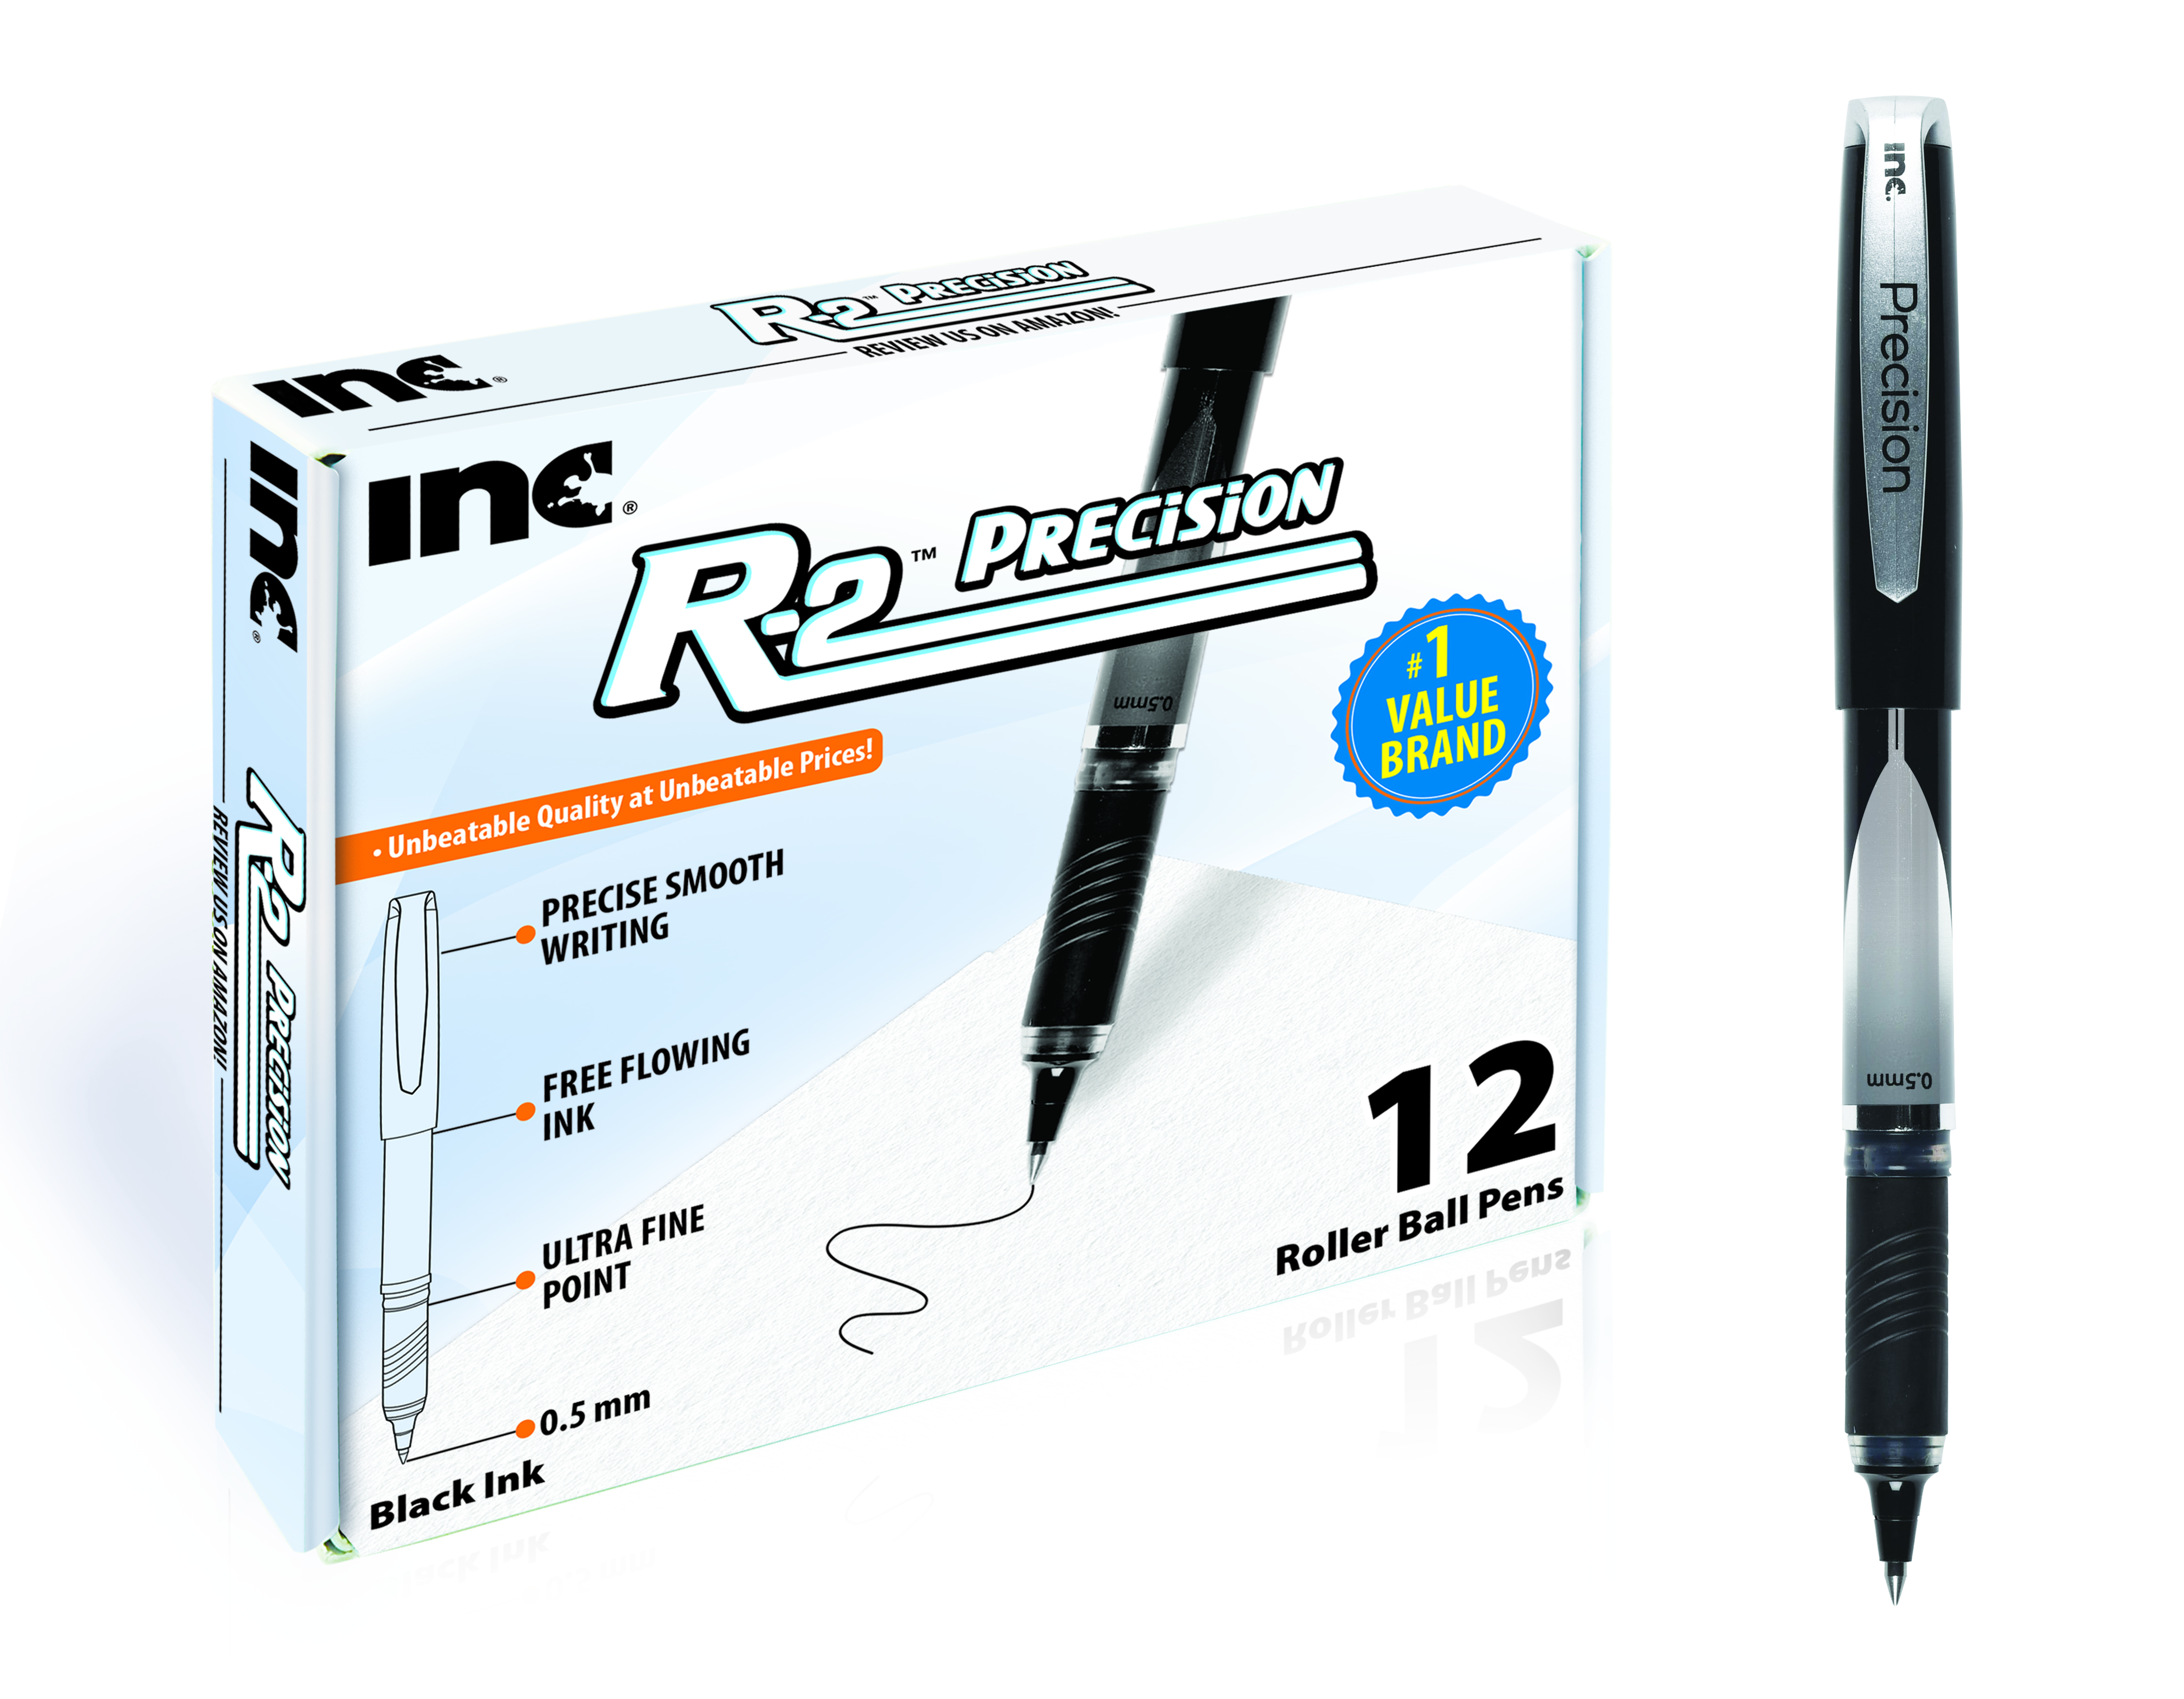 NEW! 0.5 mm tip Inc. 2pk Precision Tip R2 Roller Ink Pens,Black Ink